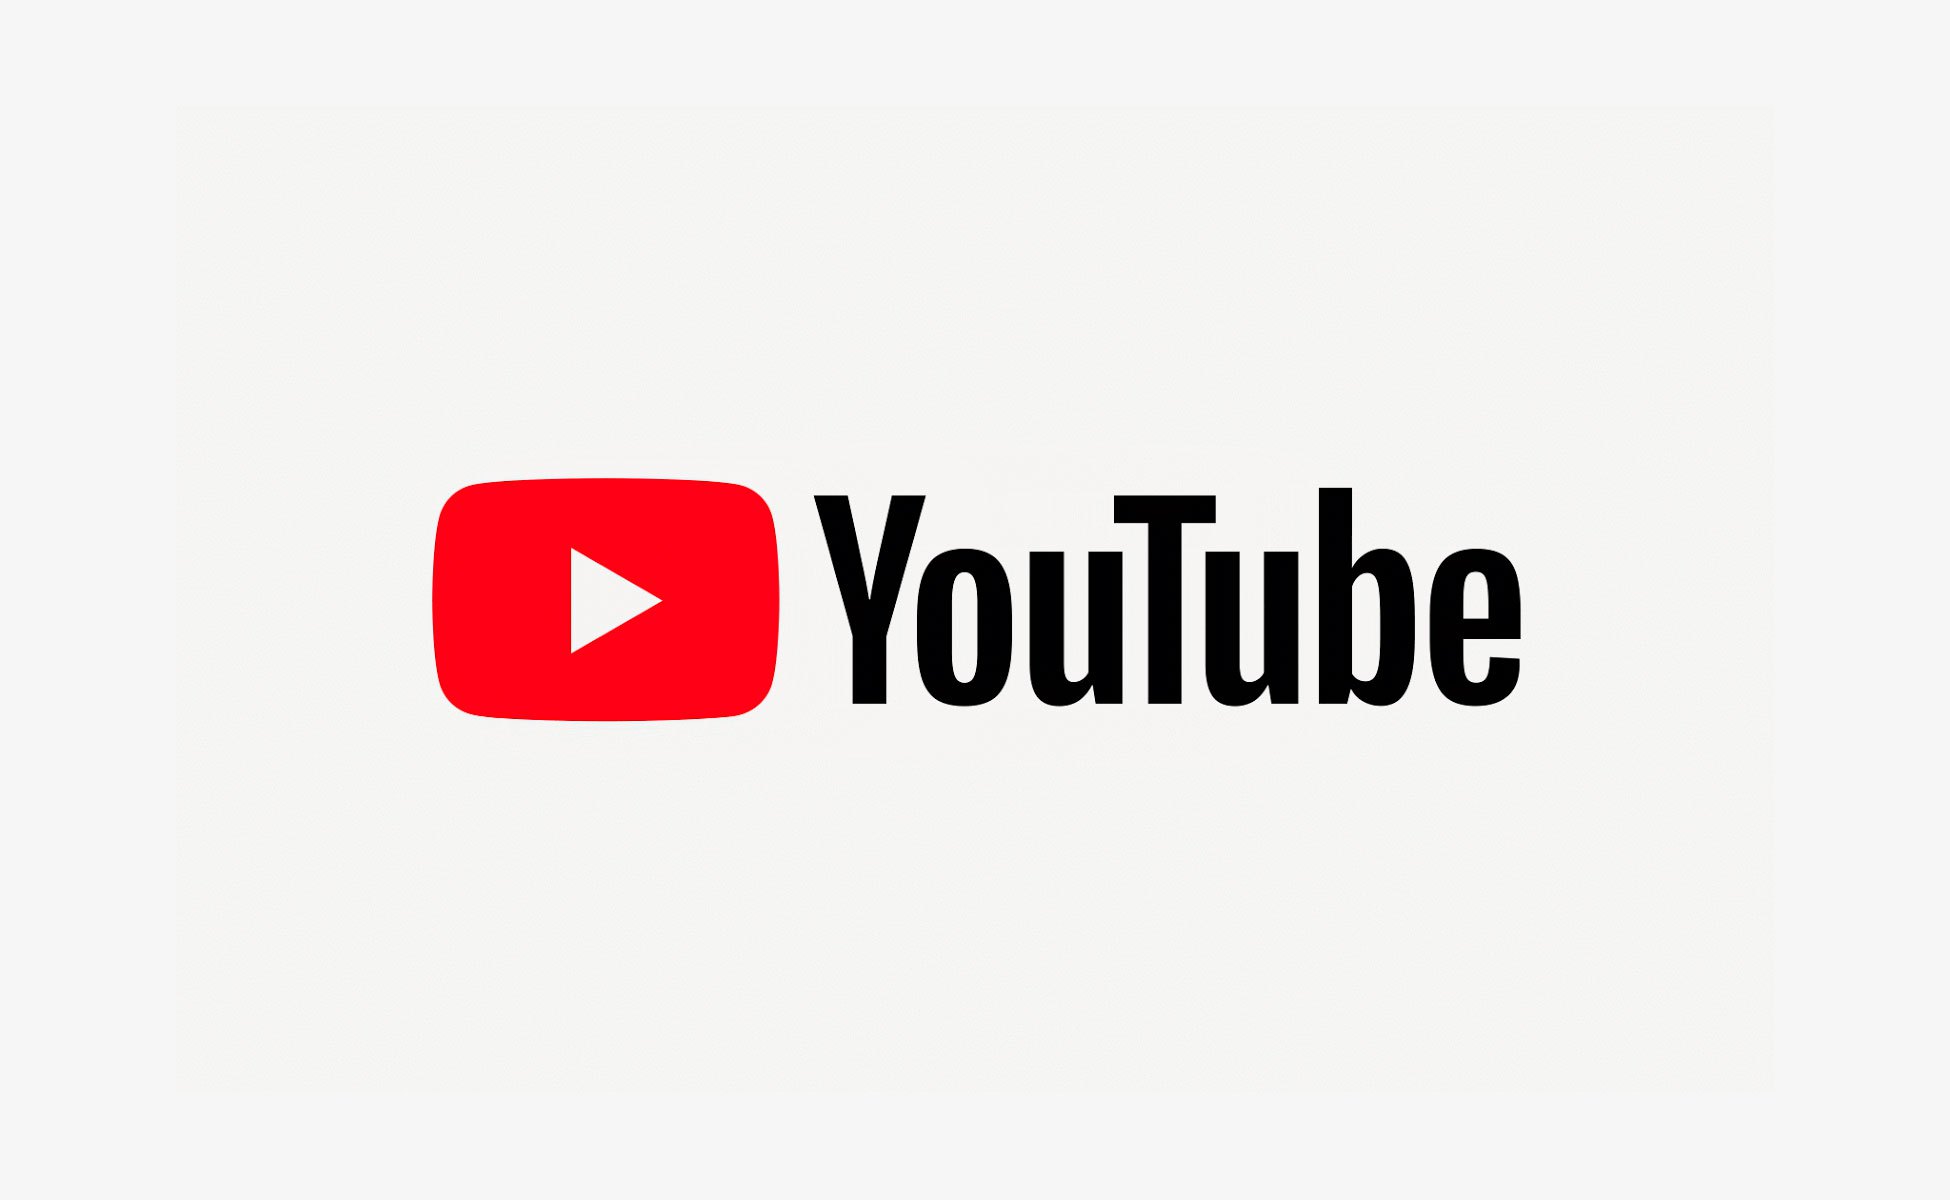 YouTube va sponsoriser des sources d’information « faisant autorité » : un danger pour les libertés